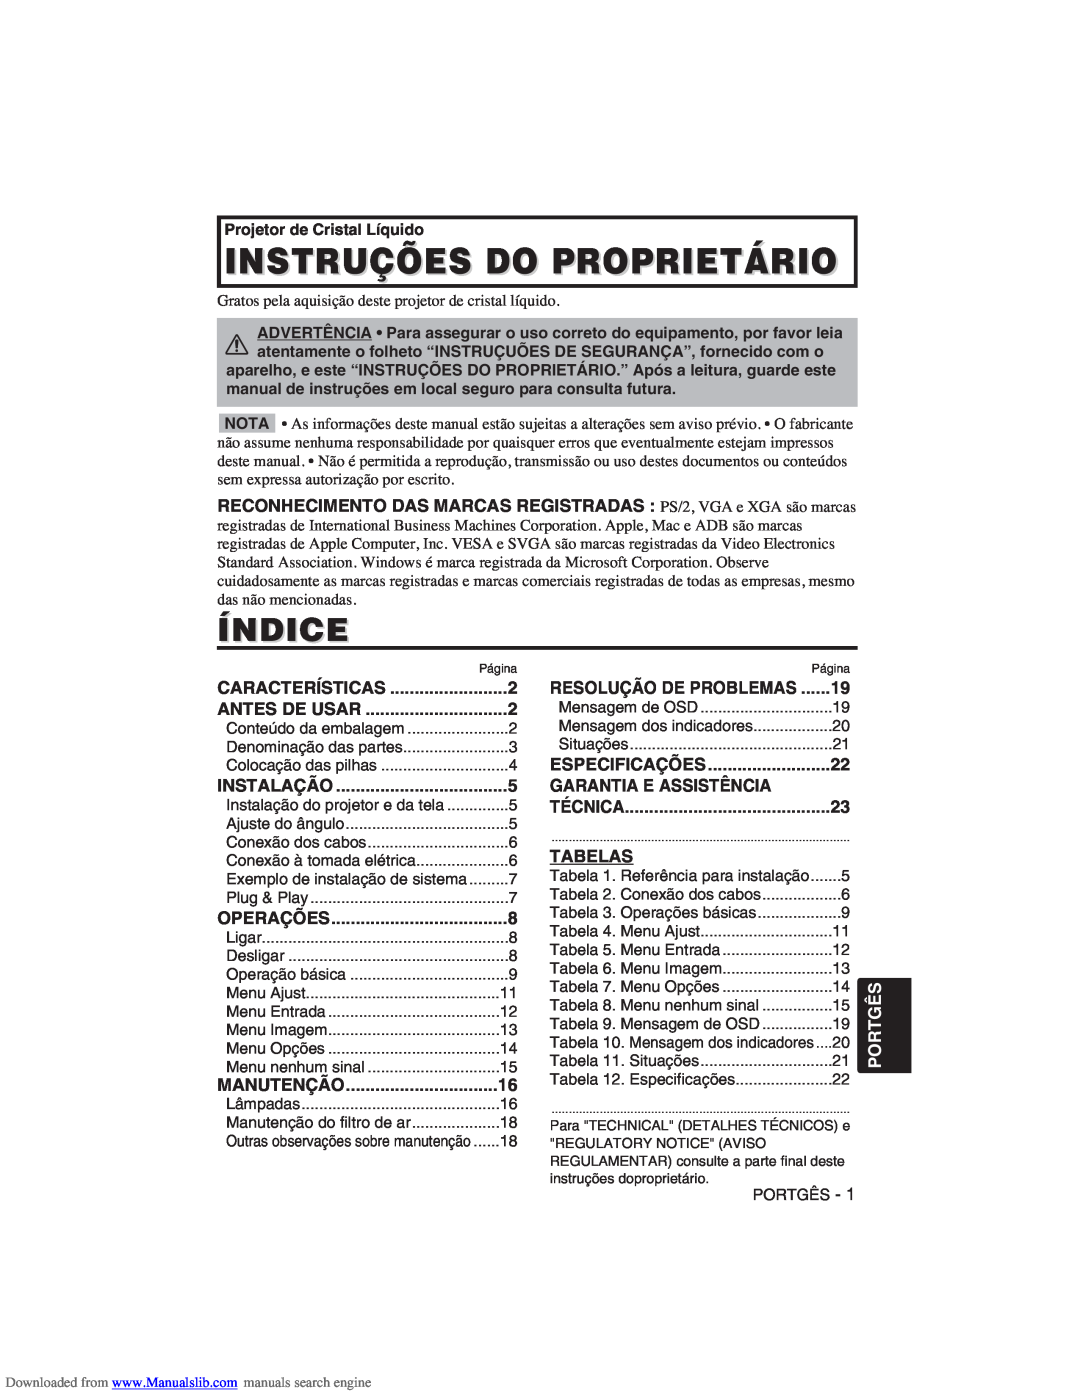 Hitachi CP-X275W user manual Instruções Do Proprietário, Índice, Garantia E Assistência, Tabelas, Portgês 